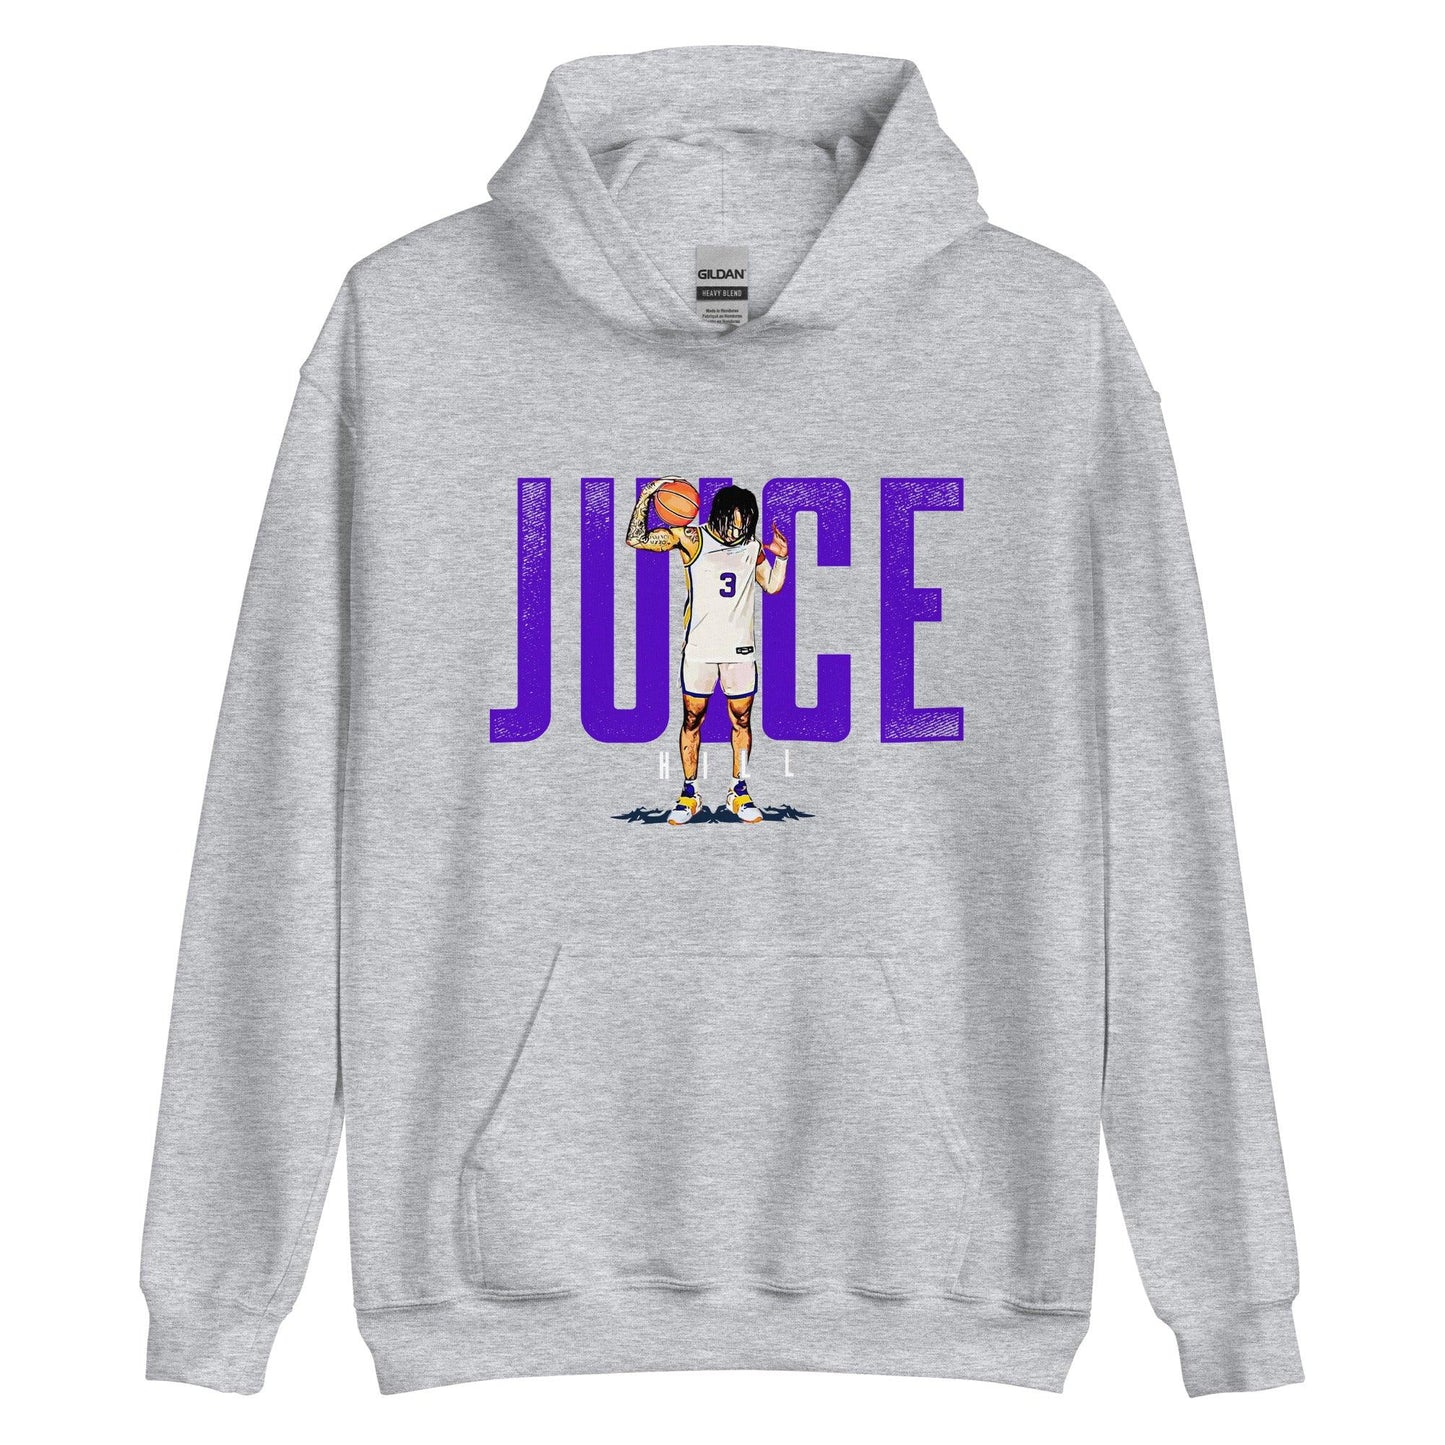 Justice Hill “Juice” Hoodie - Fan Arch